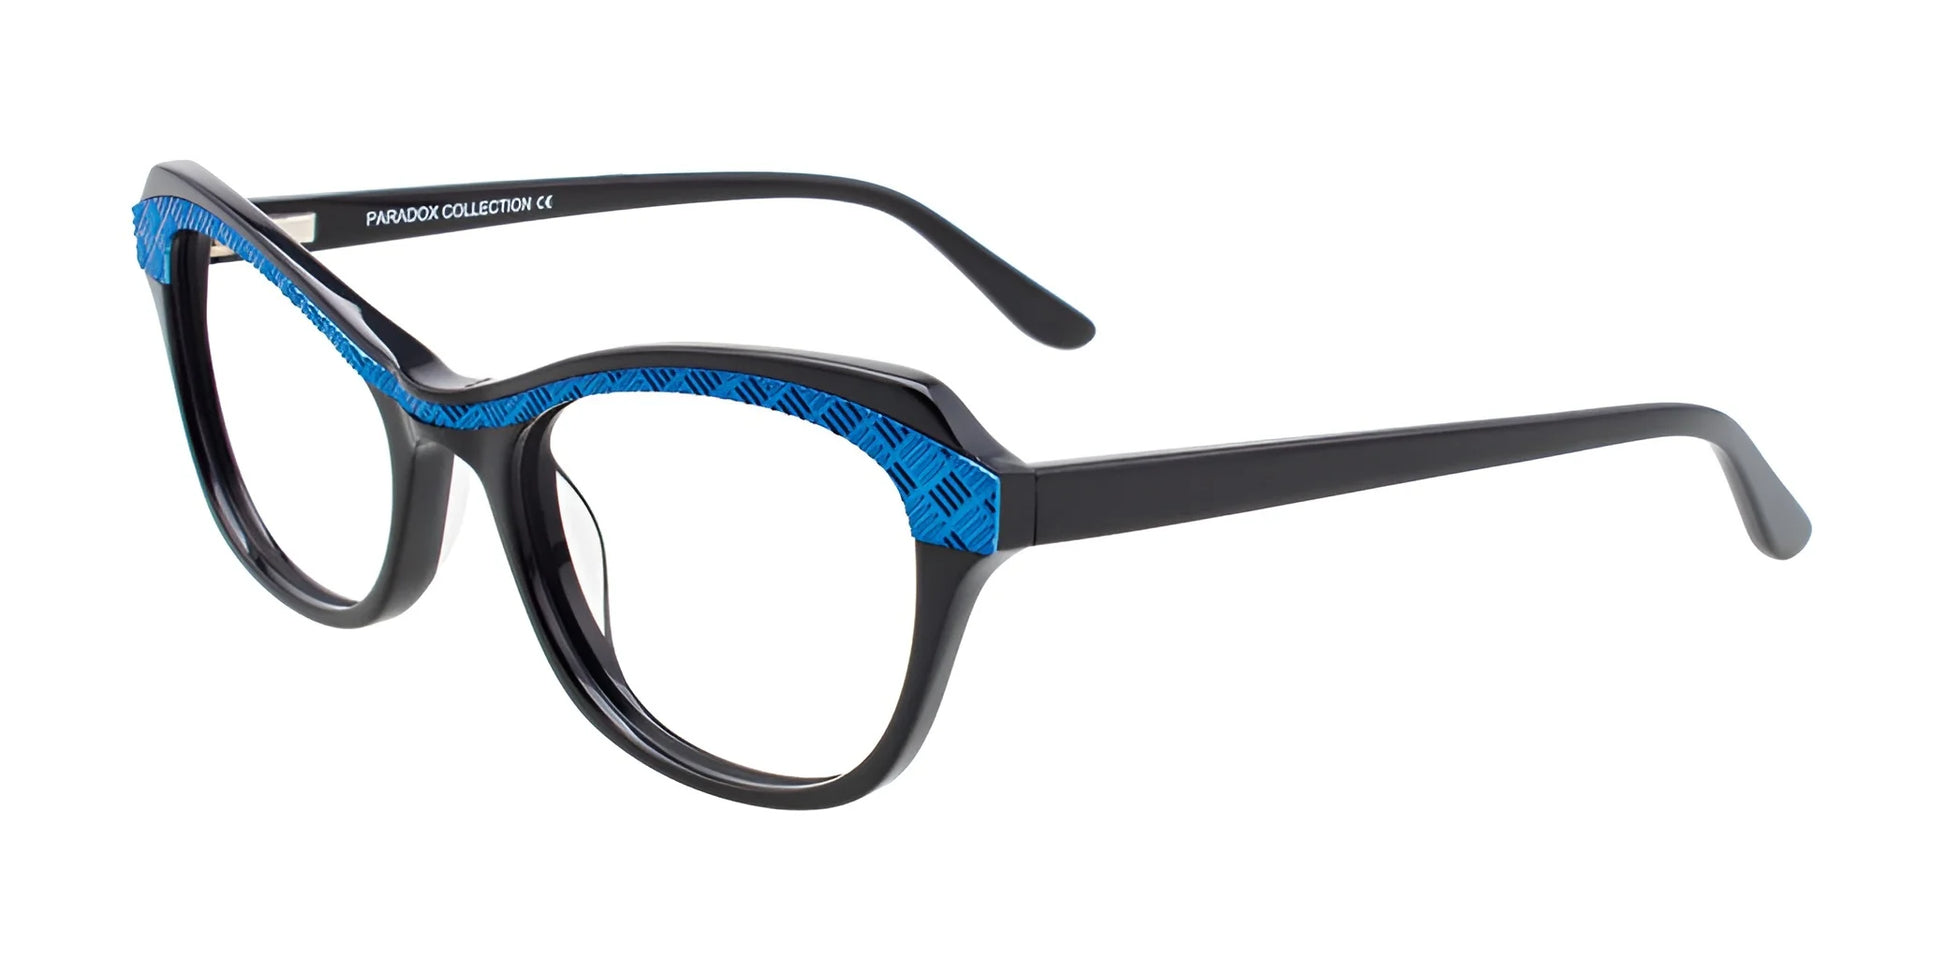 Paradox P5040 Eyeglasses Black & Blue